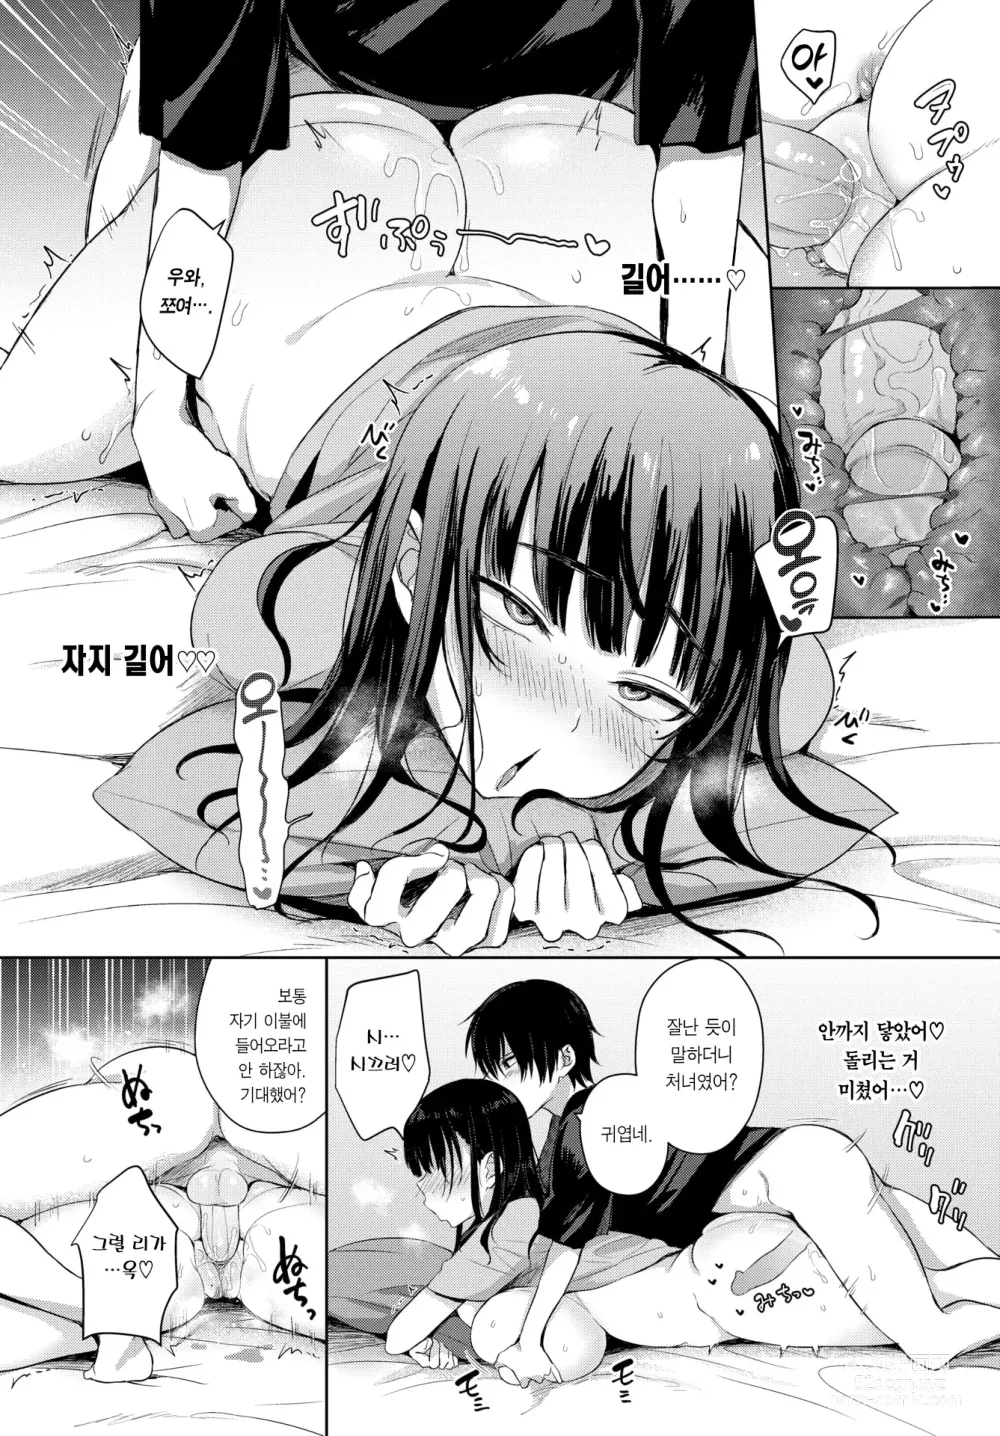 Page 9 of manga 7 Days